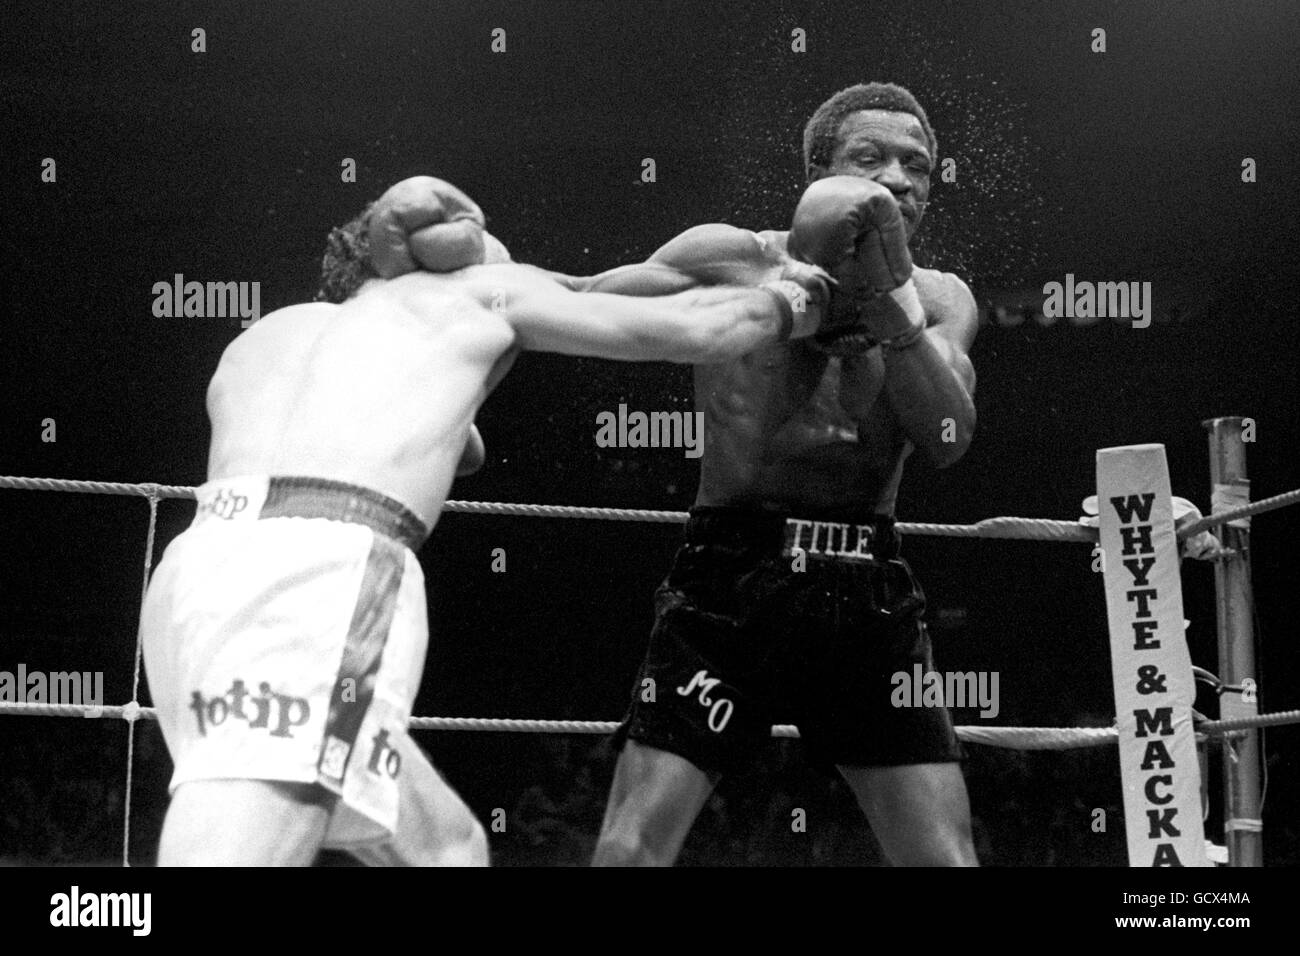 Boxen - WBC Licht-Titel im Mittelgewicht - Maurice Hope V Rocky Mattioli - Conference Centre, Wembley Stockfoto